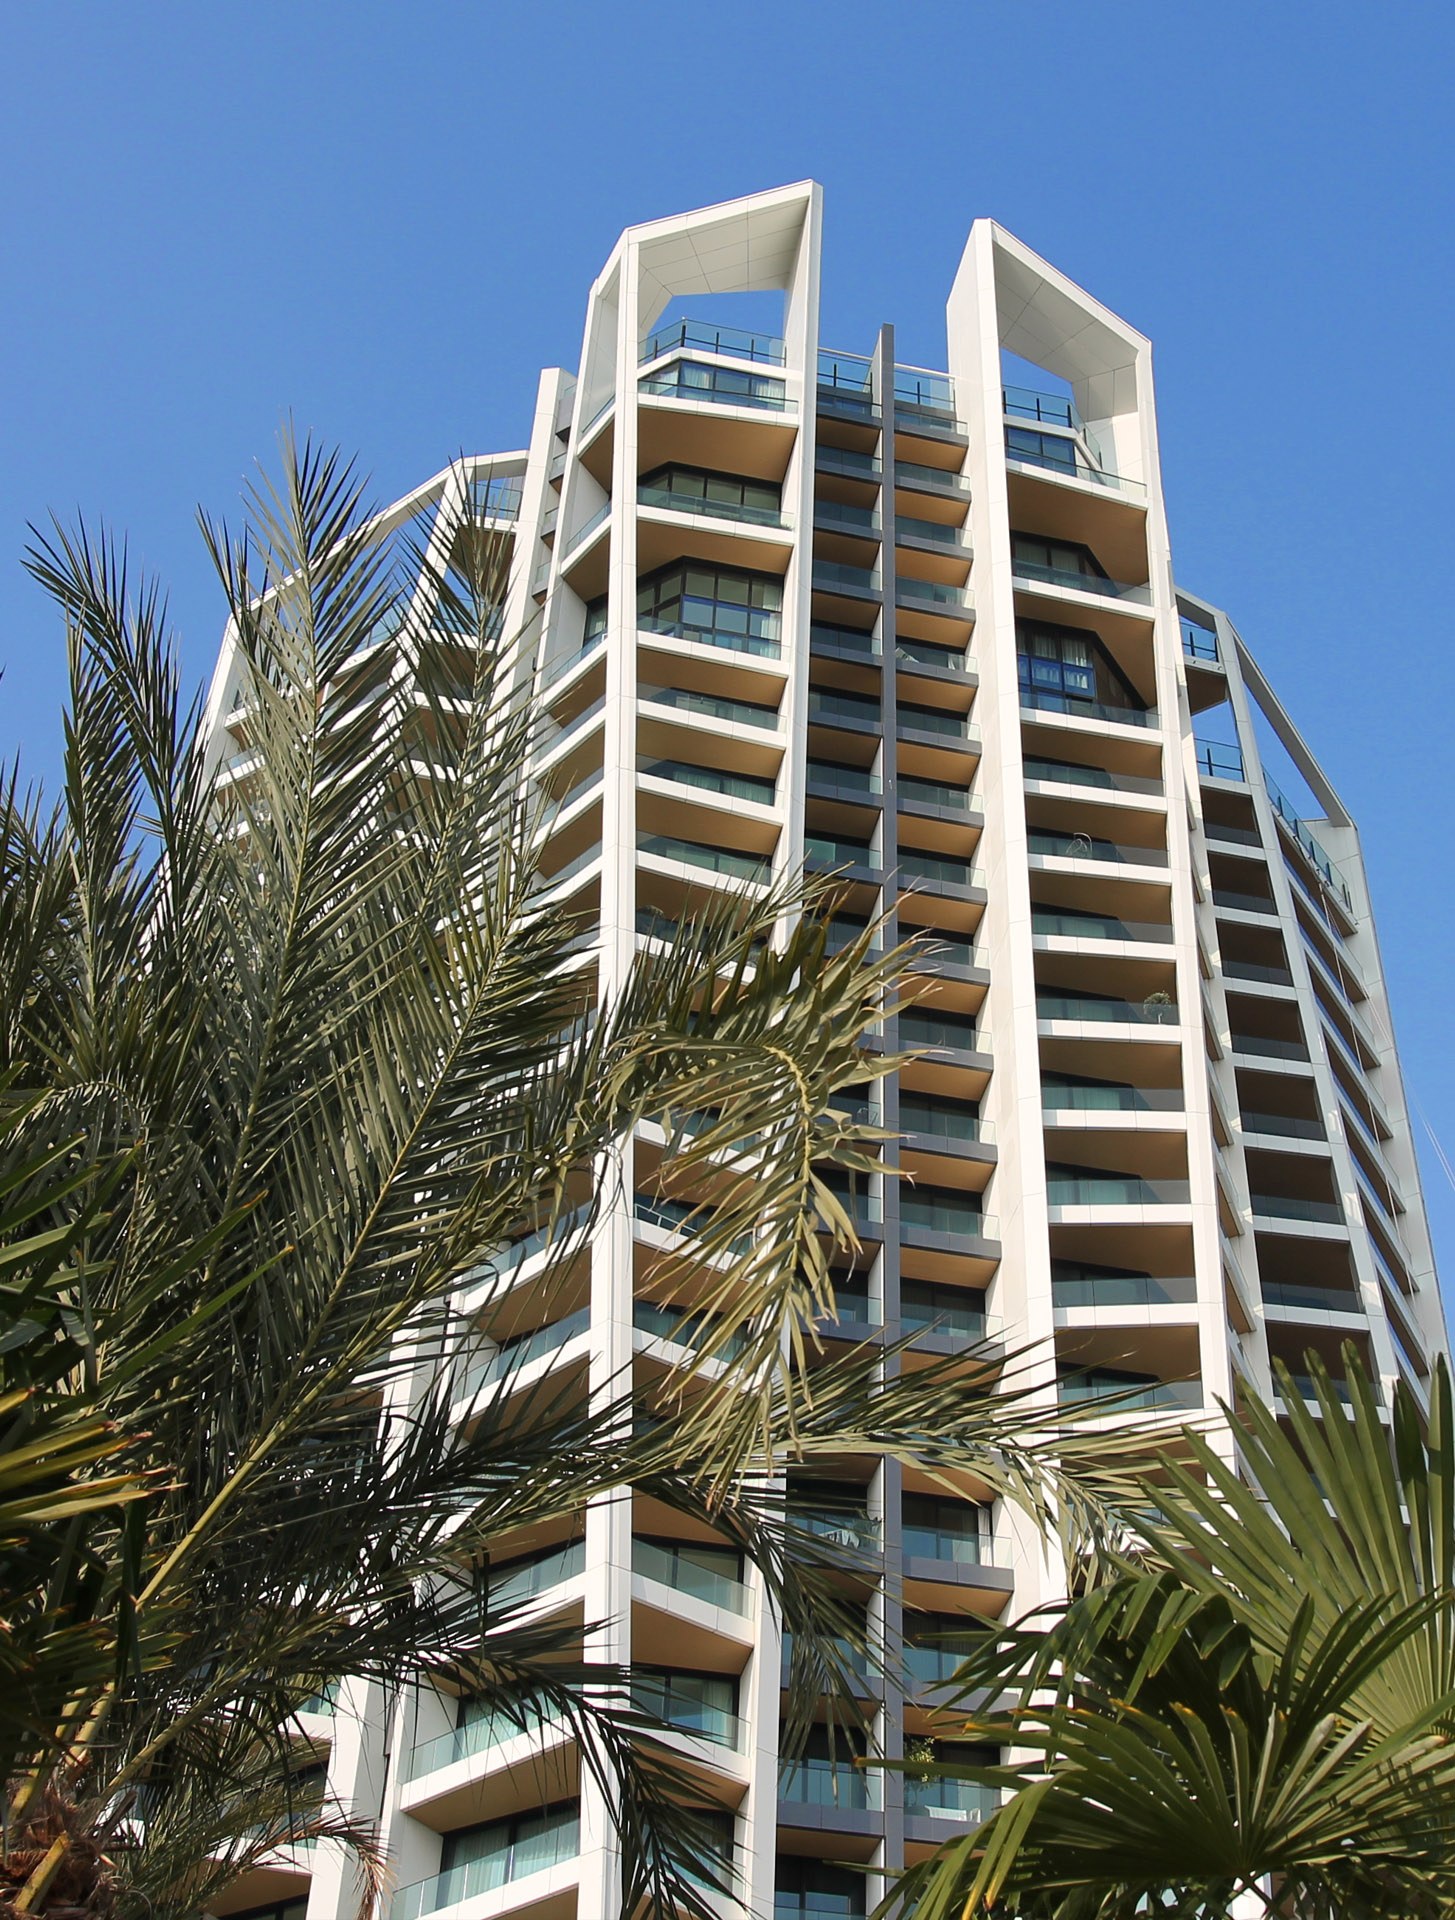 UHA Skytower Limassol Cyprus BBF luxury highrise 2021 Graphisoft Awards